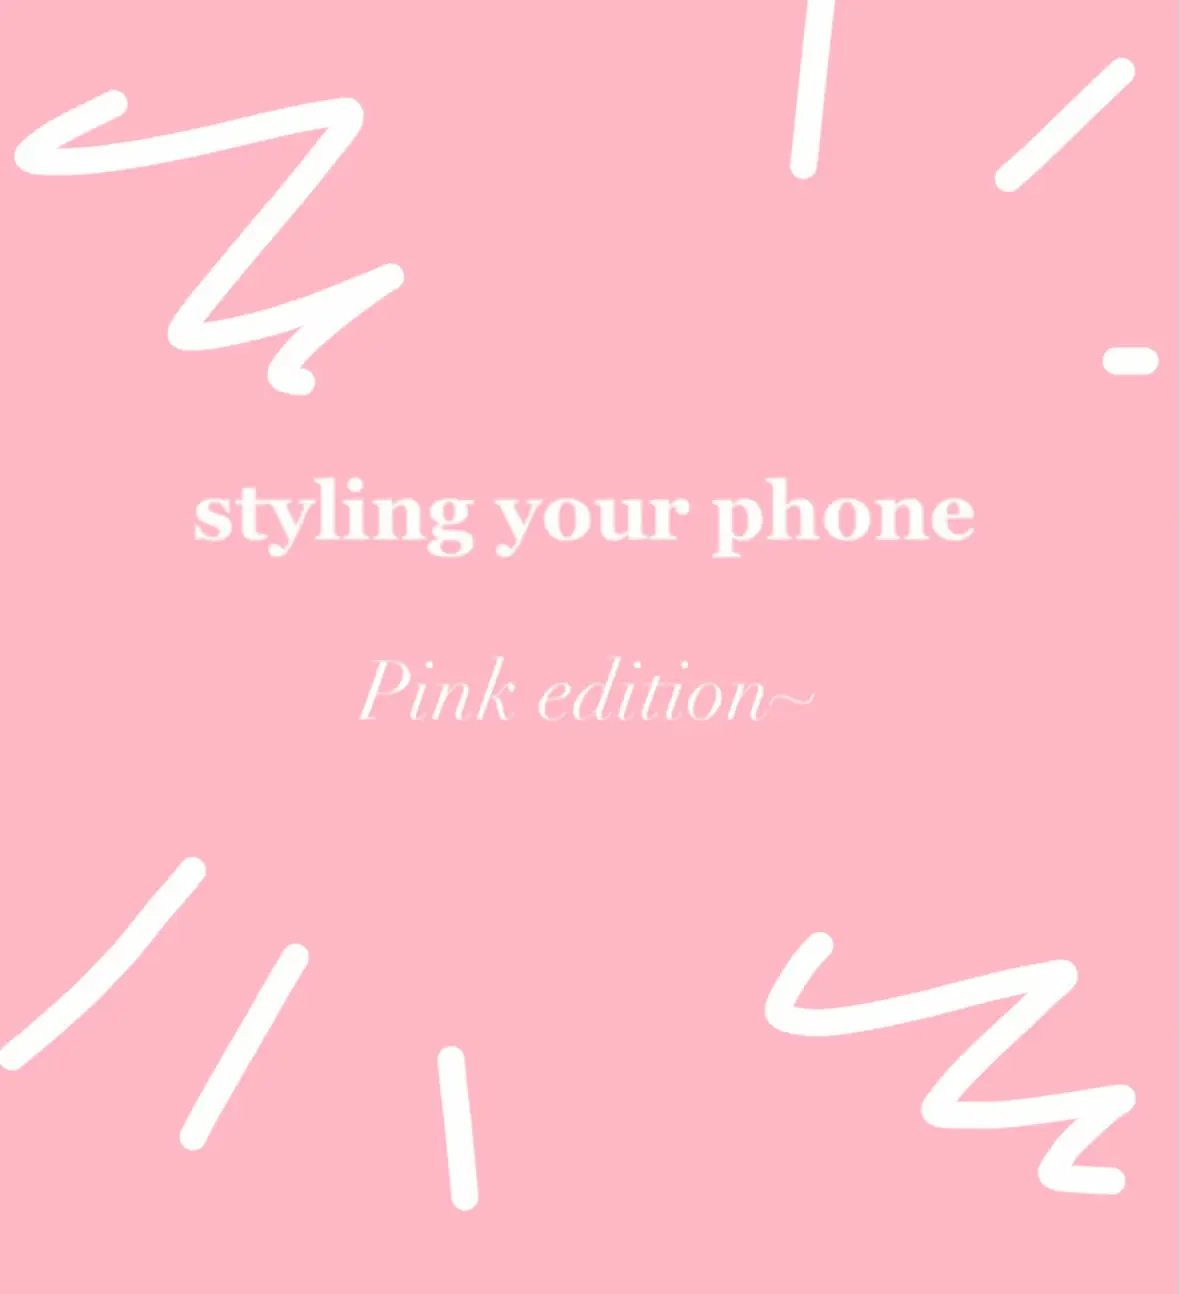 Pink Pilates Princess Wallpaper - Lemon8 Search